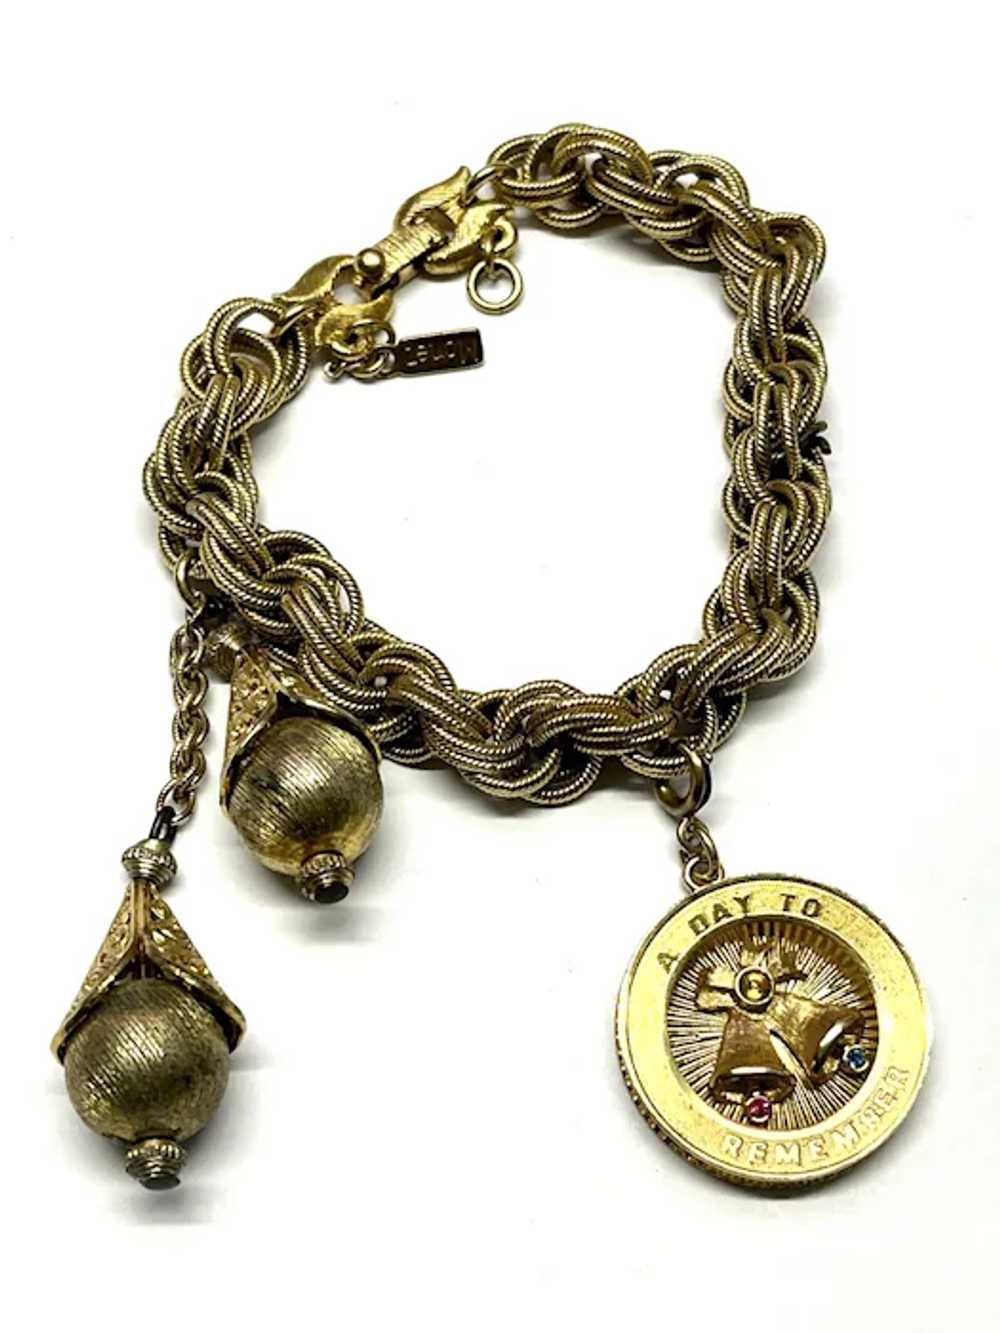 Vintage Monet Gold Charm Bracelet - image 3